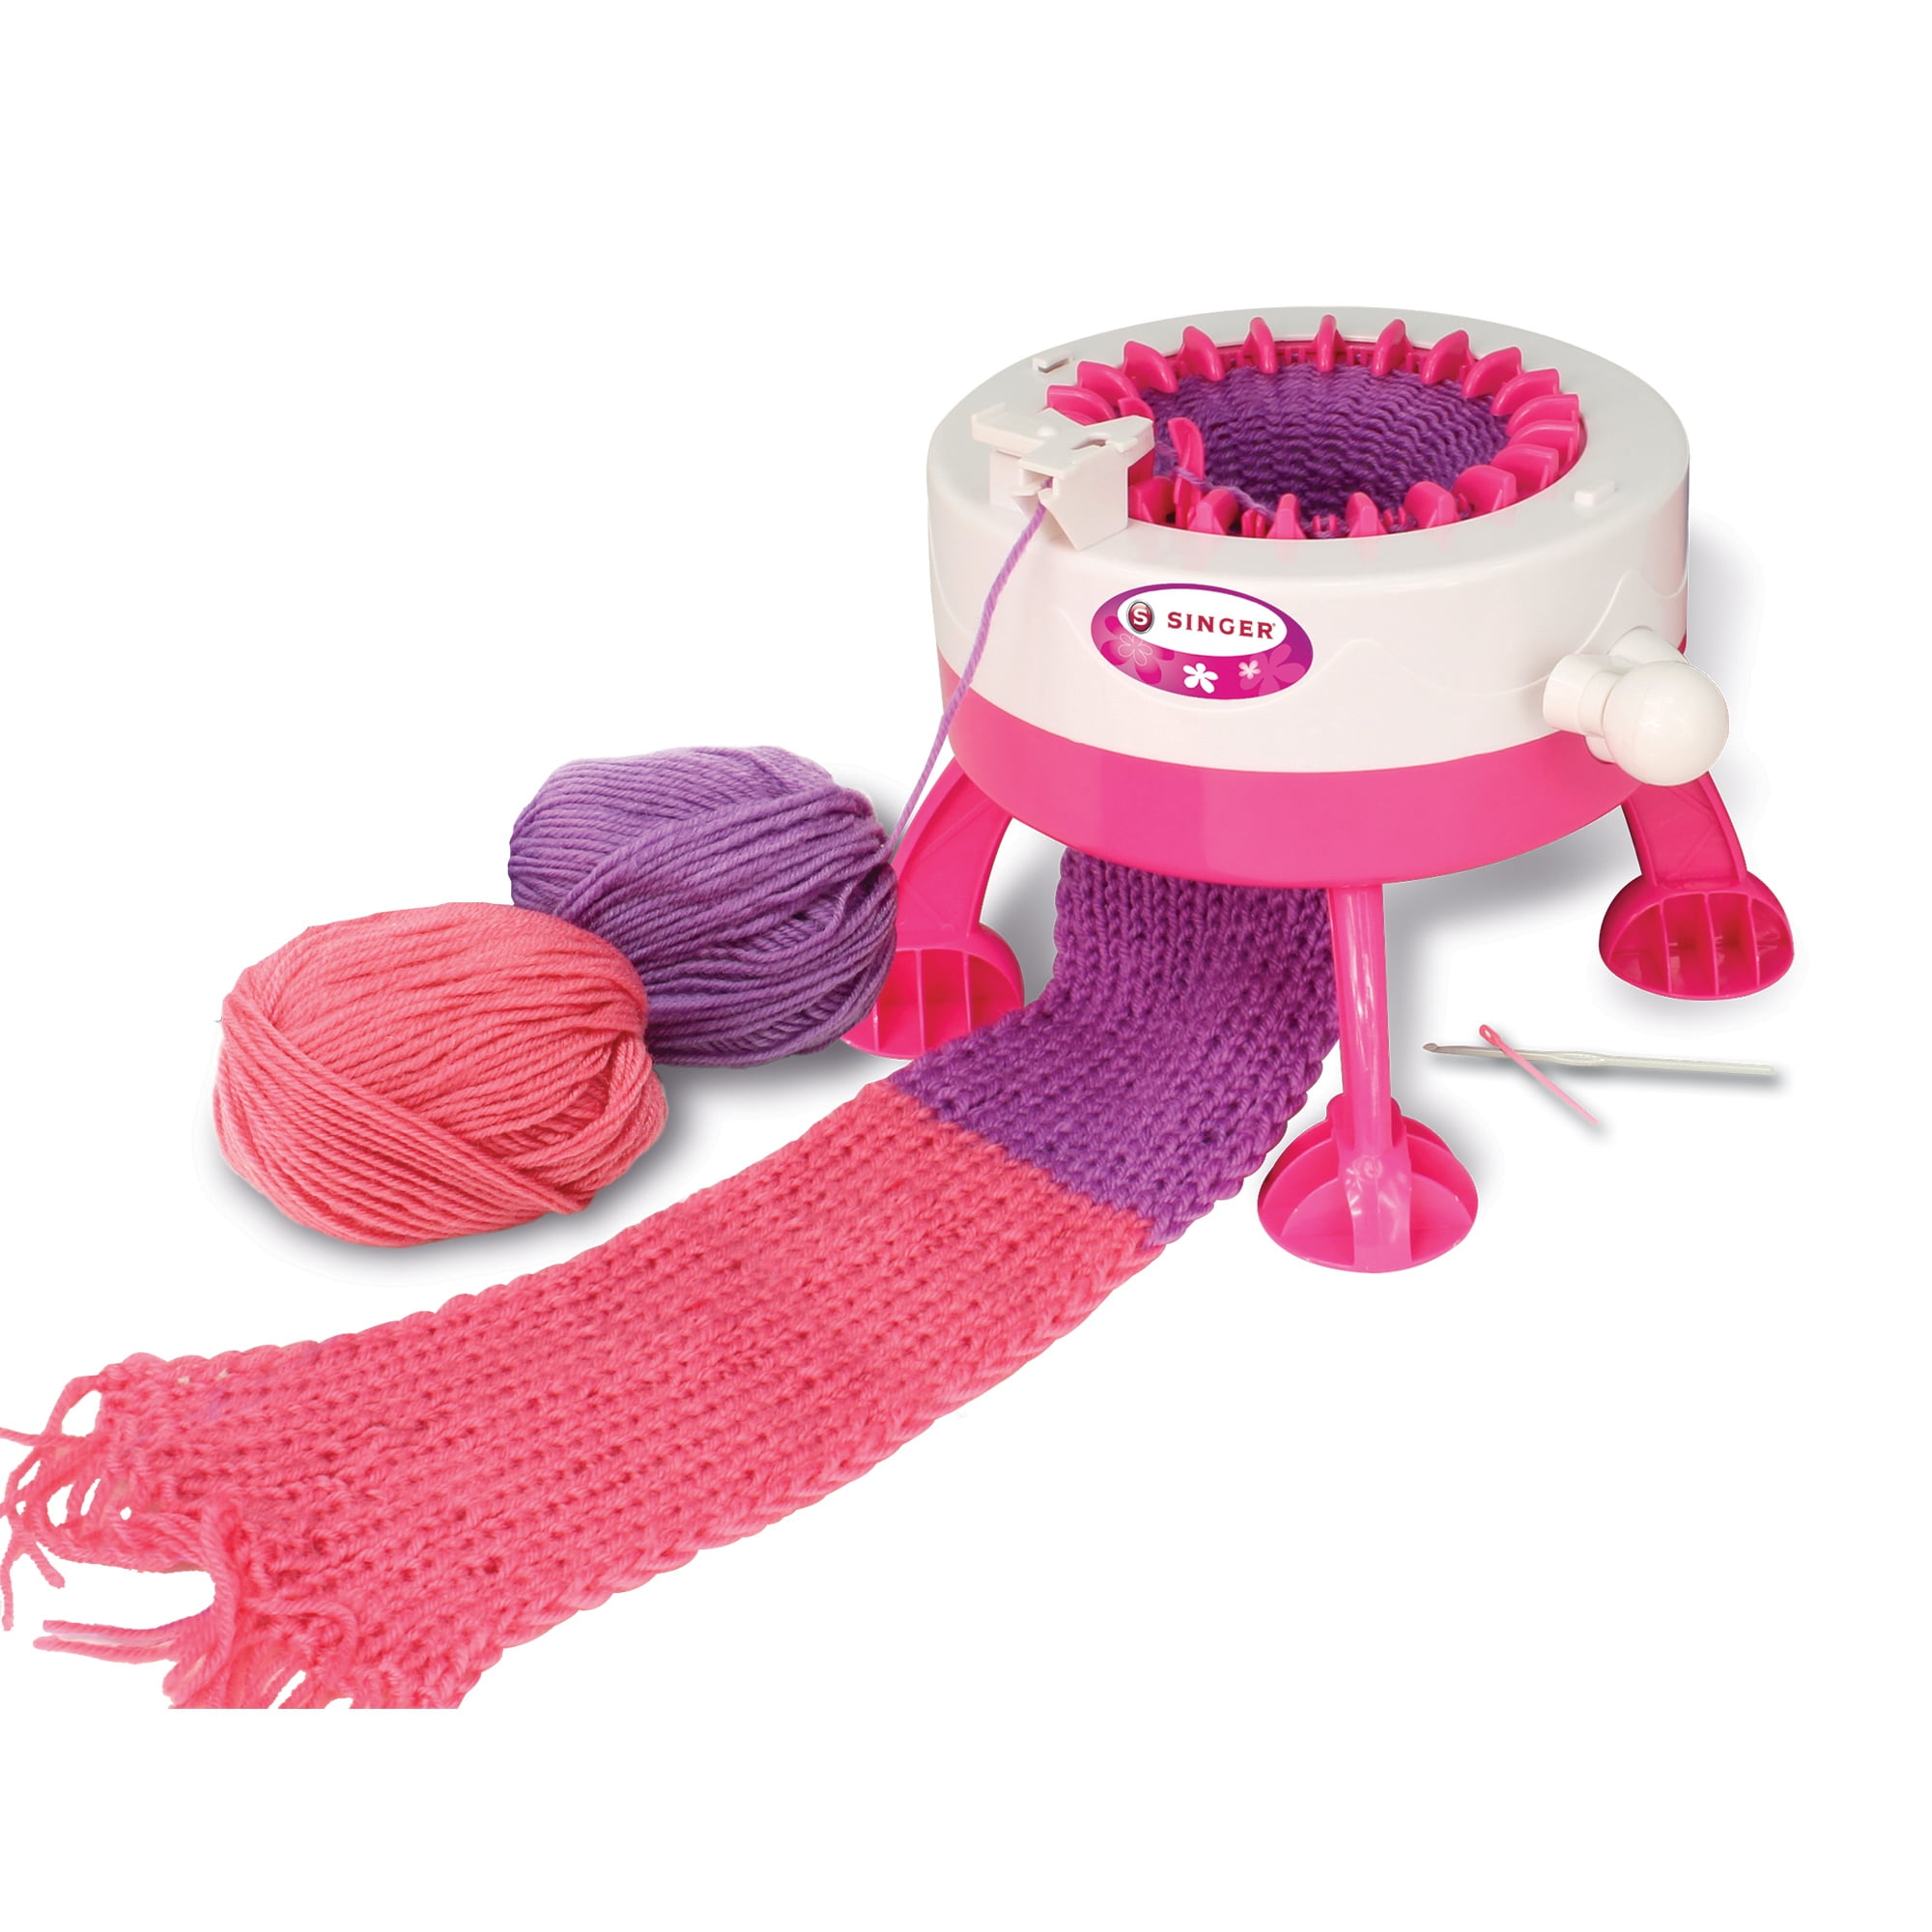 Купить машинку для вязания. Вязальная машина km025. Вязальная машина km025-Red. Вязальная детская машина Knit Knit. Вязальная машинка Knitting Machine.